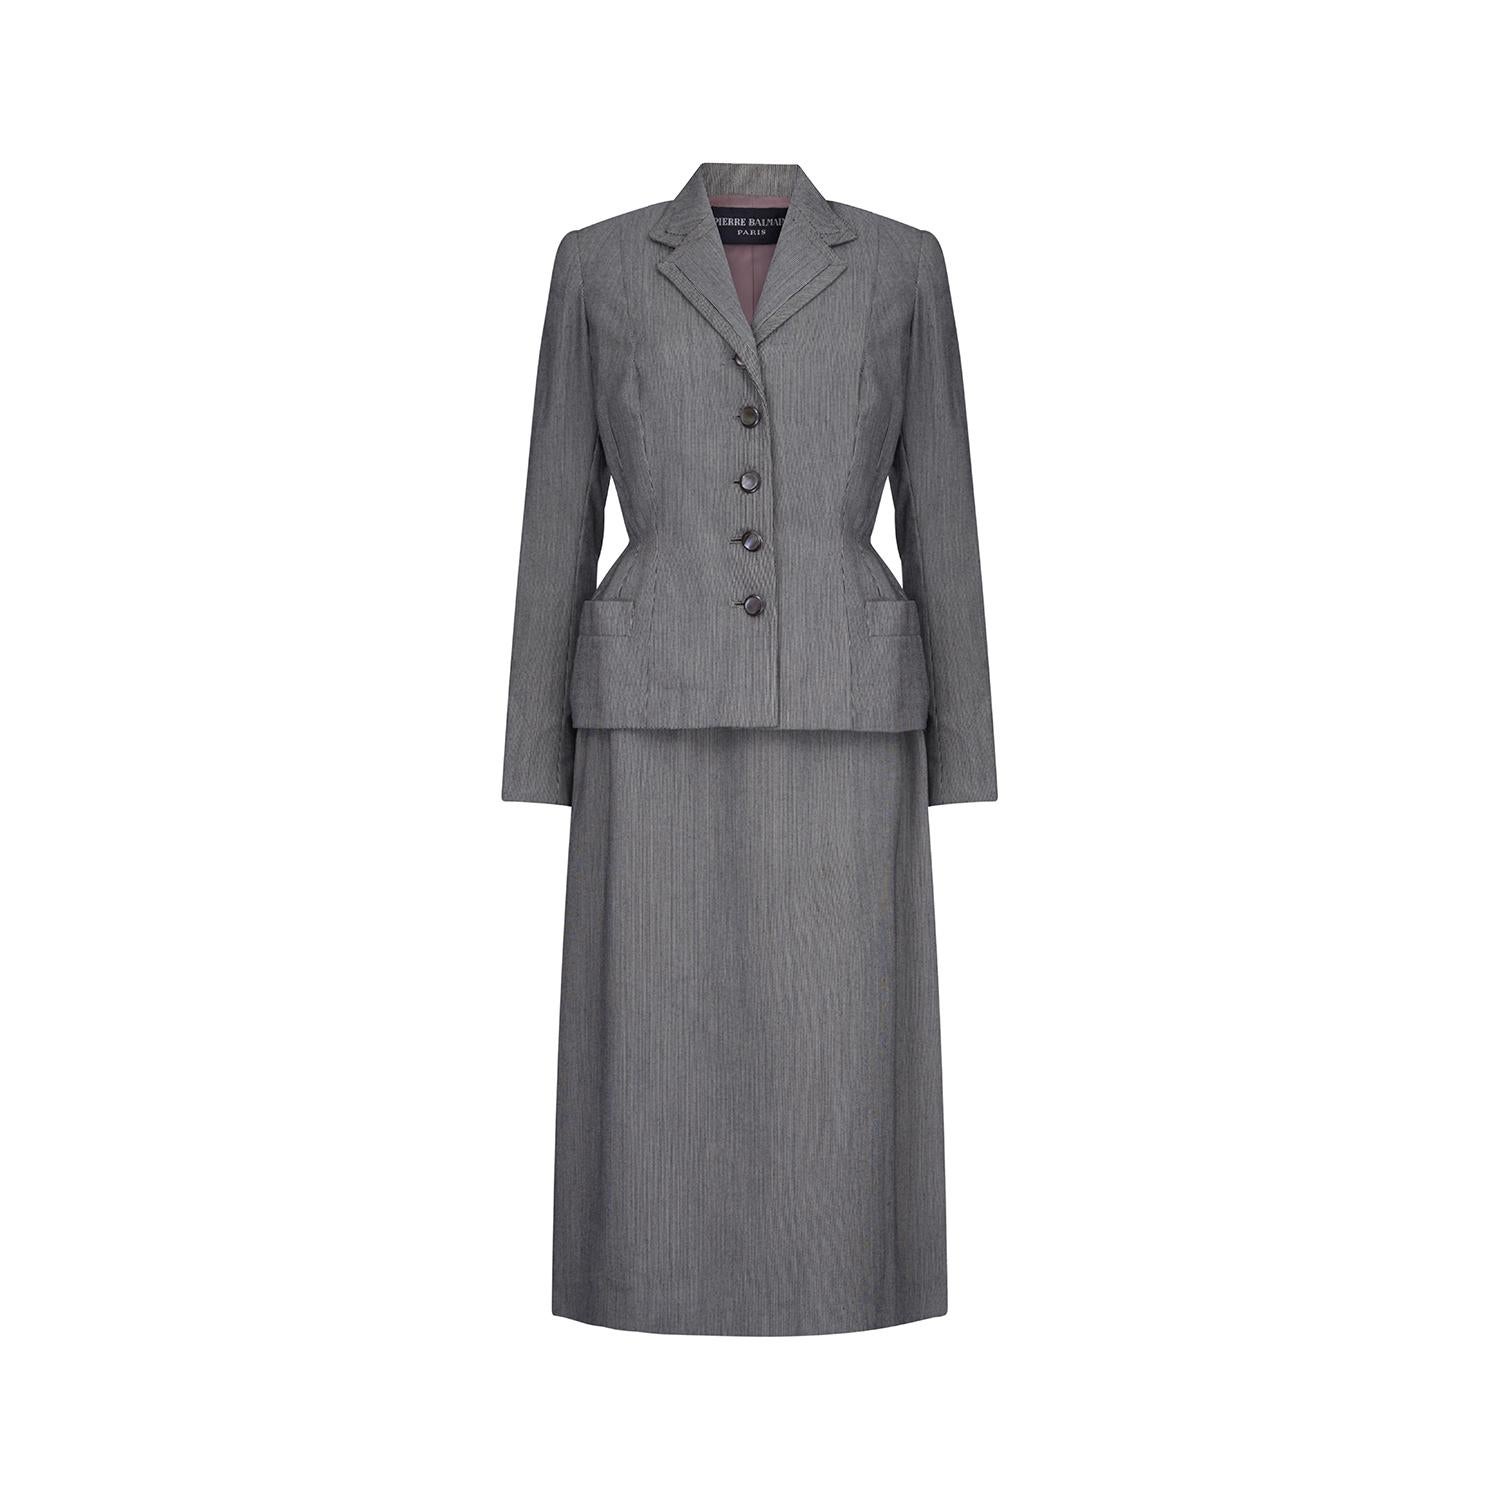 Beau et rare ensemble veste et jupe bar gris haute couture de Pierre Balmain attribué à la collection automne / hiver 1949.  La veste est taillée dans une magnifique laine à rayures, avec cinq boutons irisés qui courent sur le milieu du devant de la